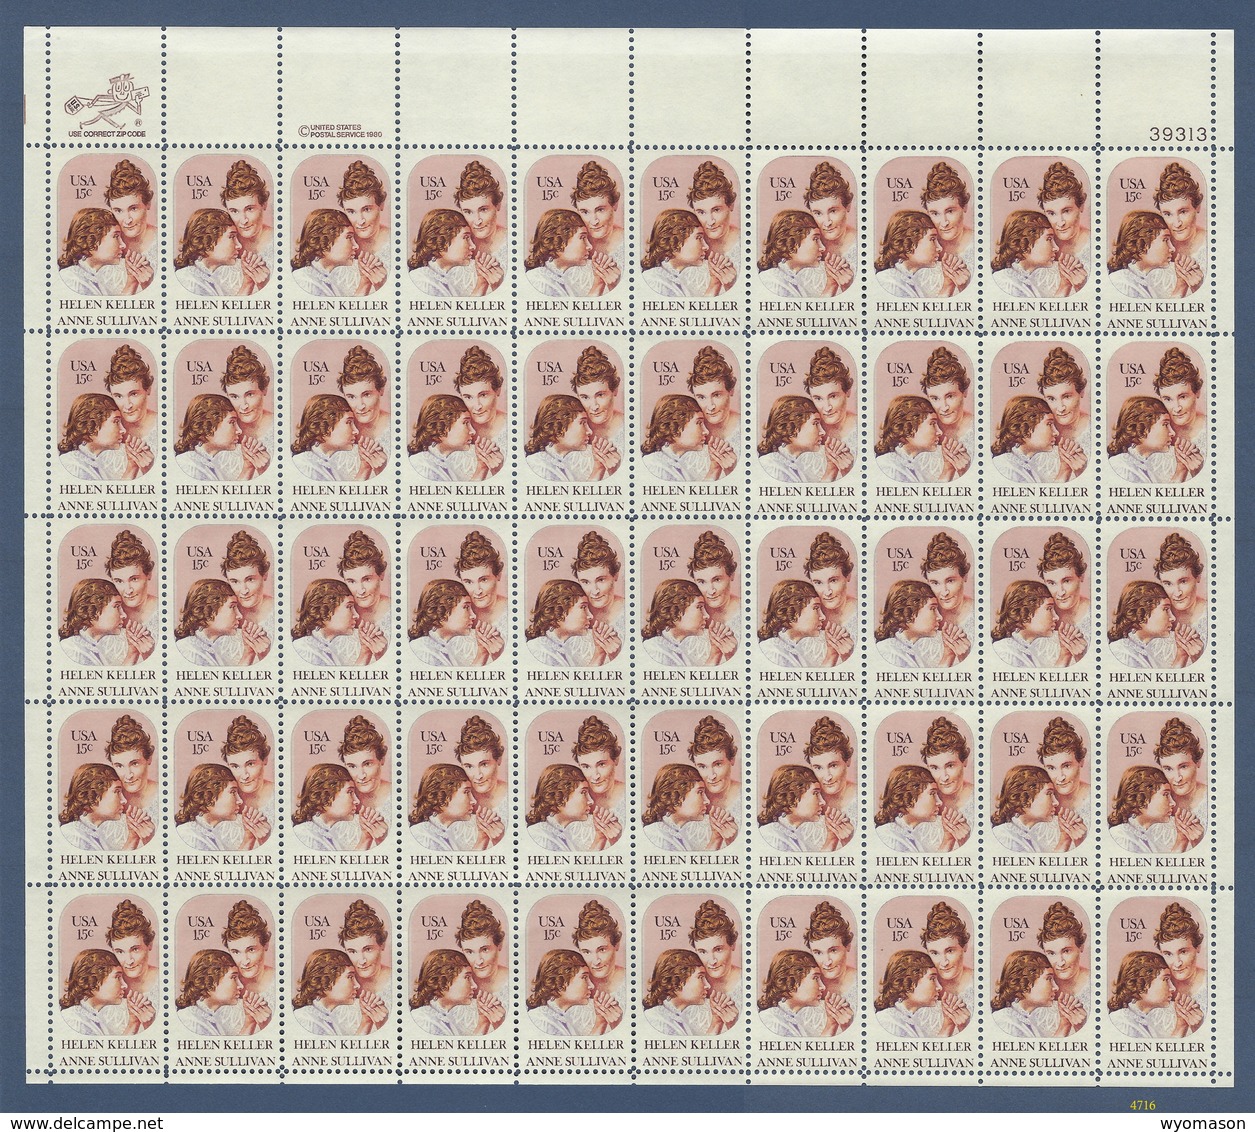 15 Cent Helen Keller / Anne Sullivan - Full Sheet - Scott #1824 - MNH [#4716] - Sheets